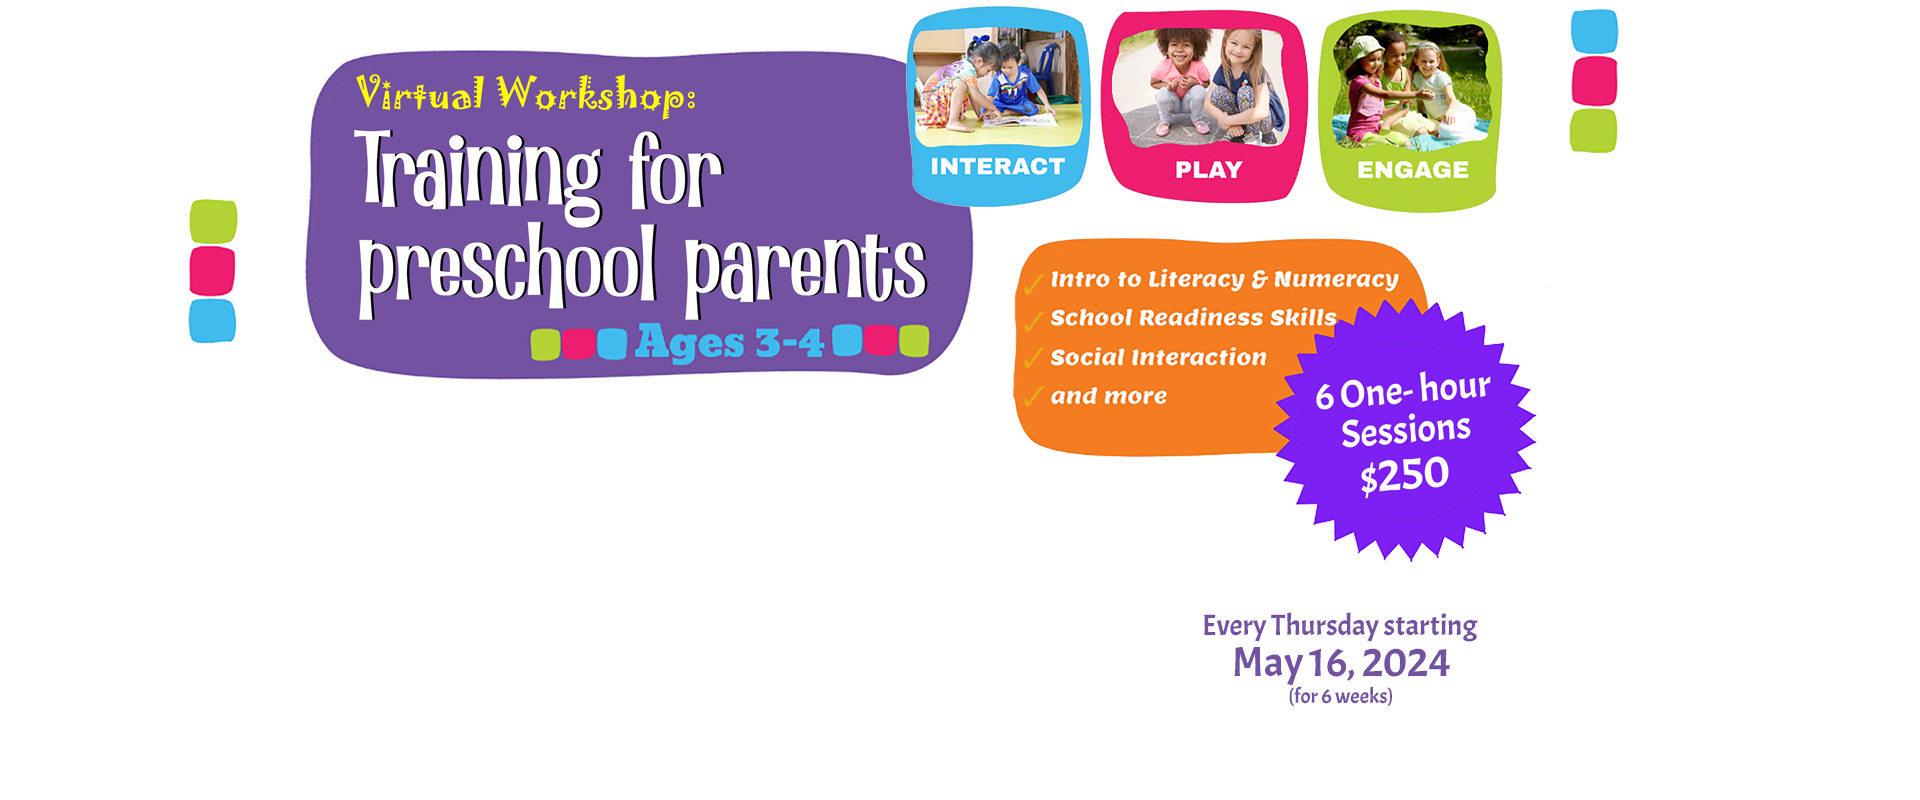 Pre-school Parents Virtual Workshop